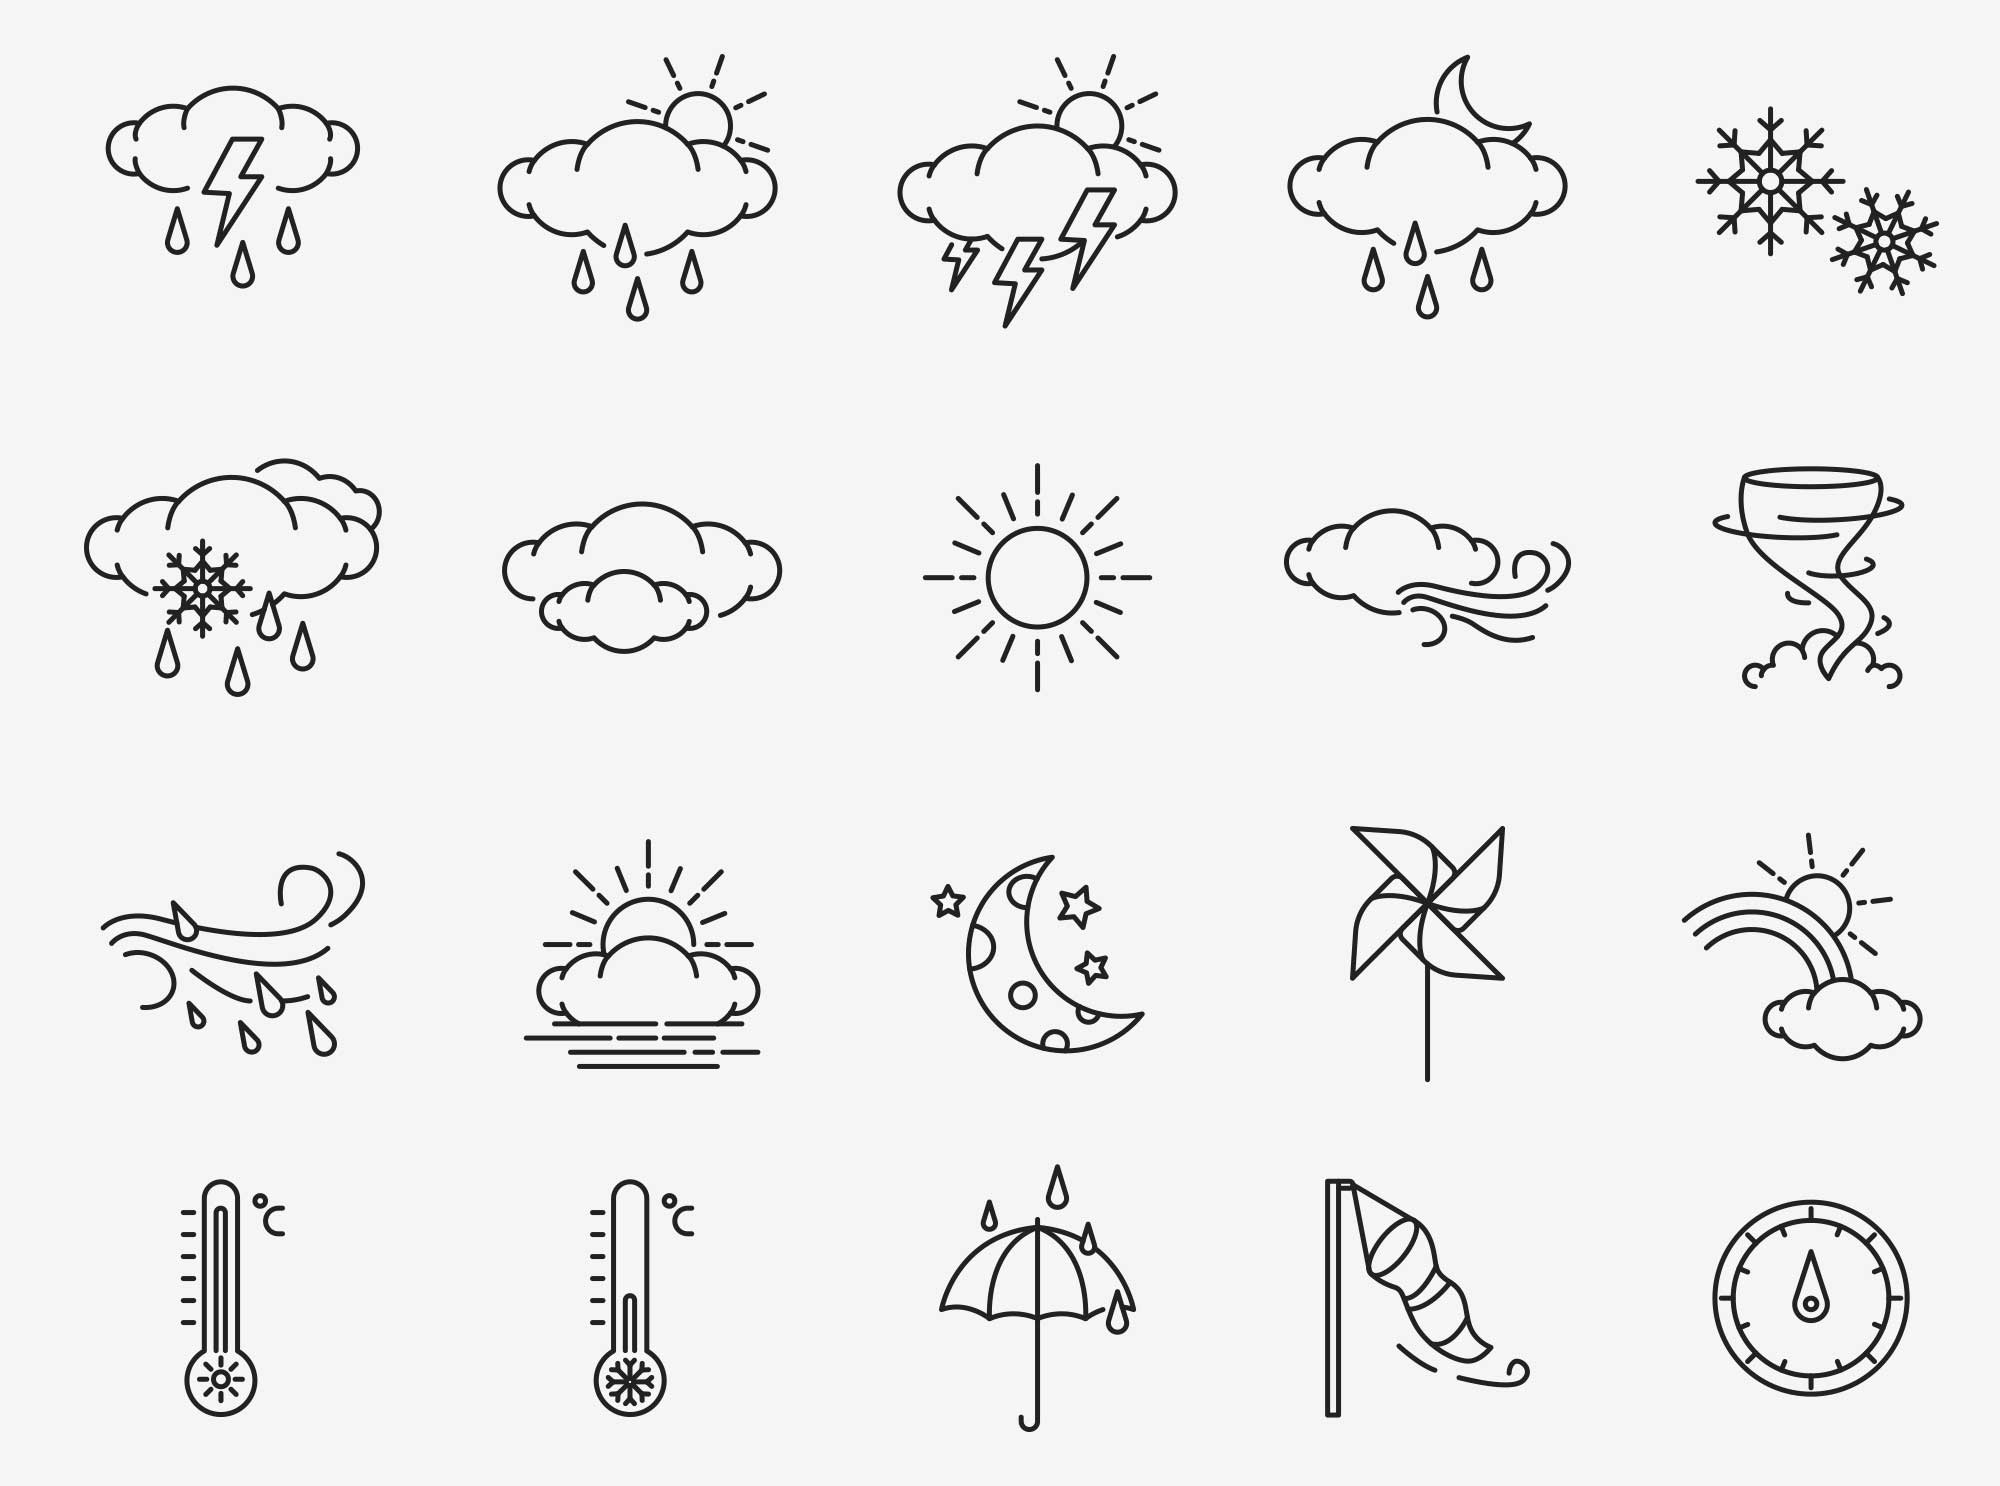 80个天气矢量图标 80 Weather Vector Icons 图标素材 第2张